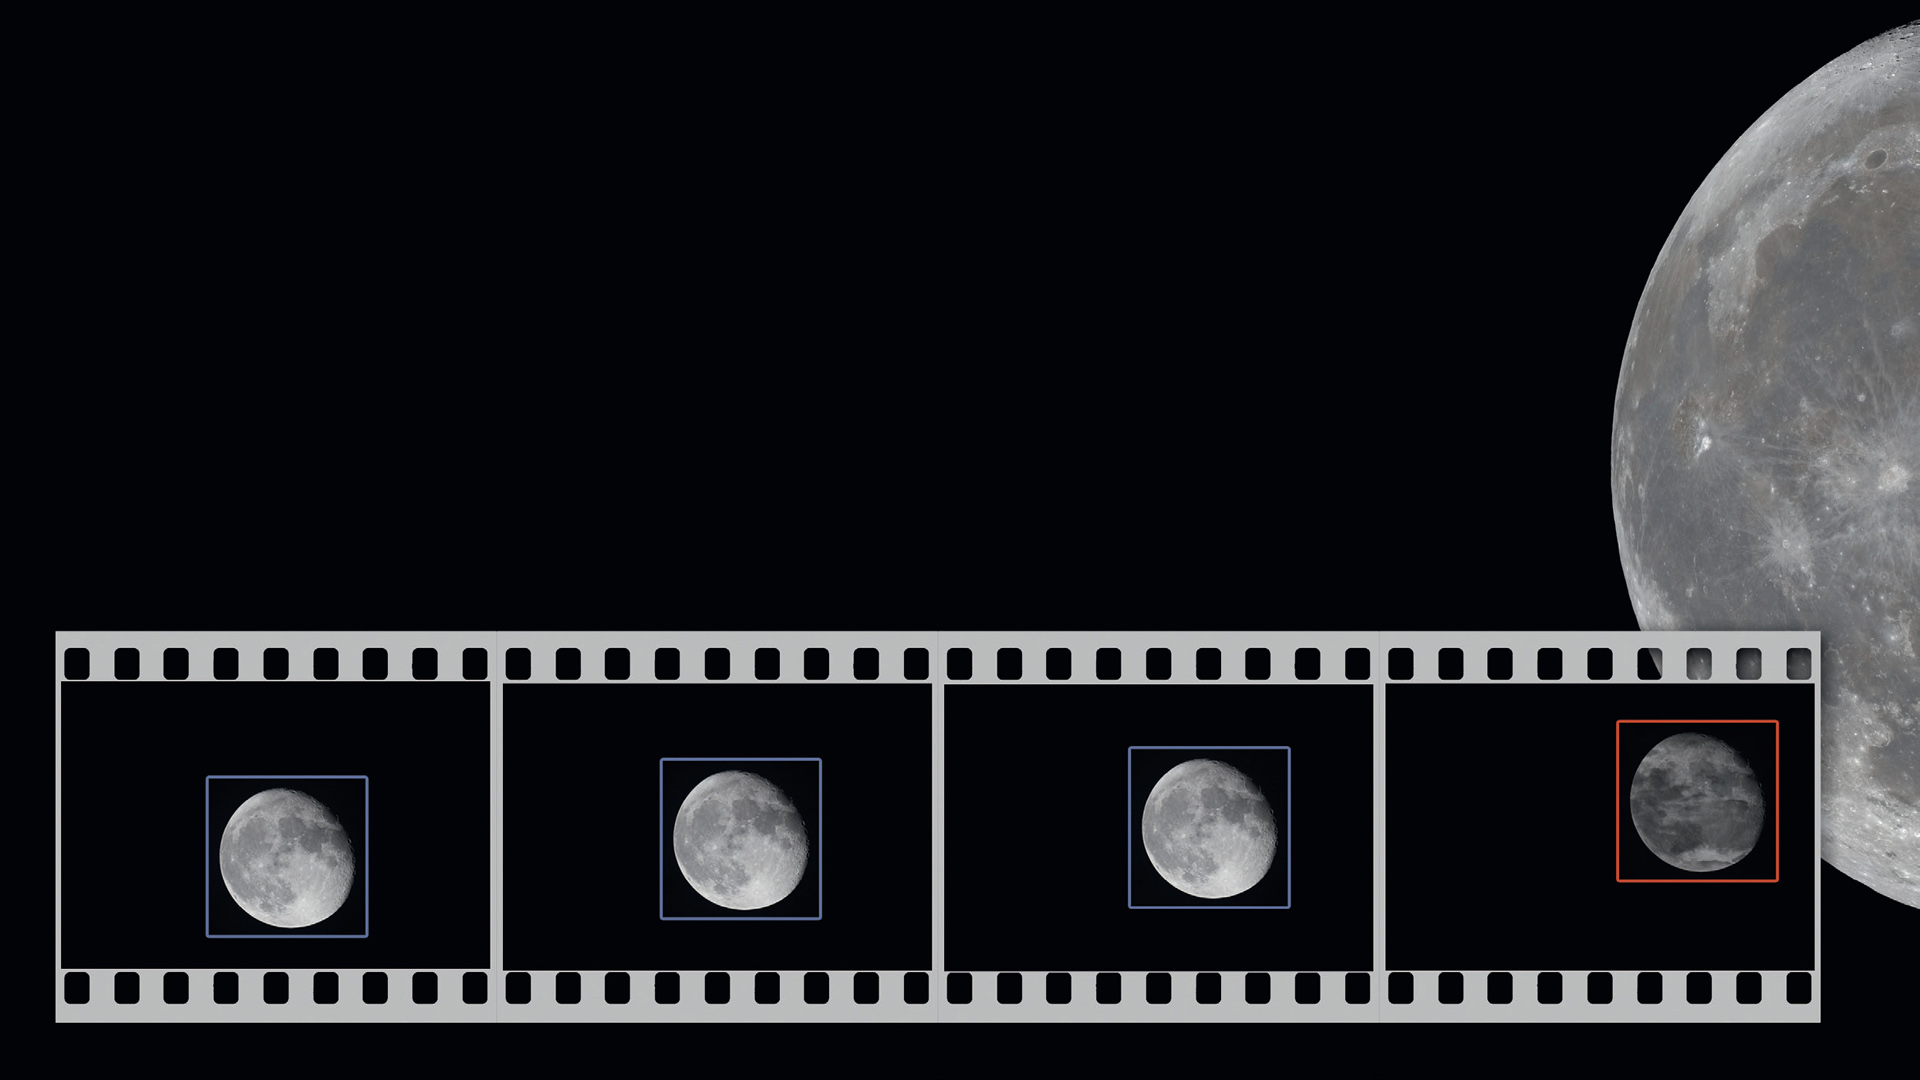 Le programme PIPP est parfait pour le prétraitement des images du soleil, de la Lune et des planètes, ainsi que des vidéos.